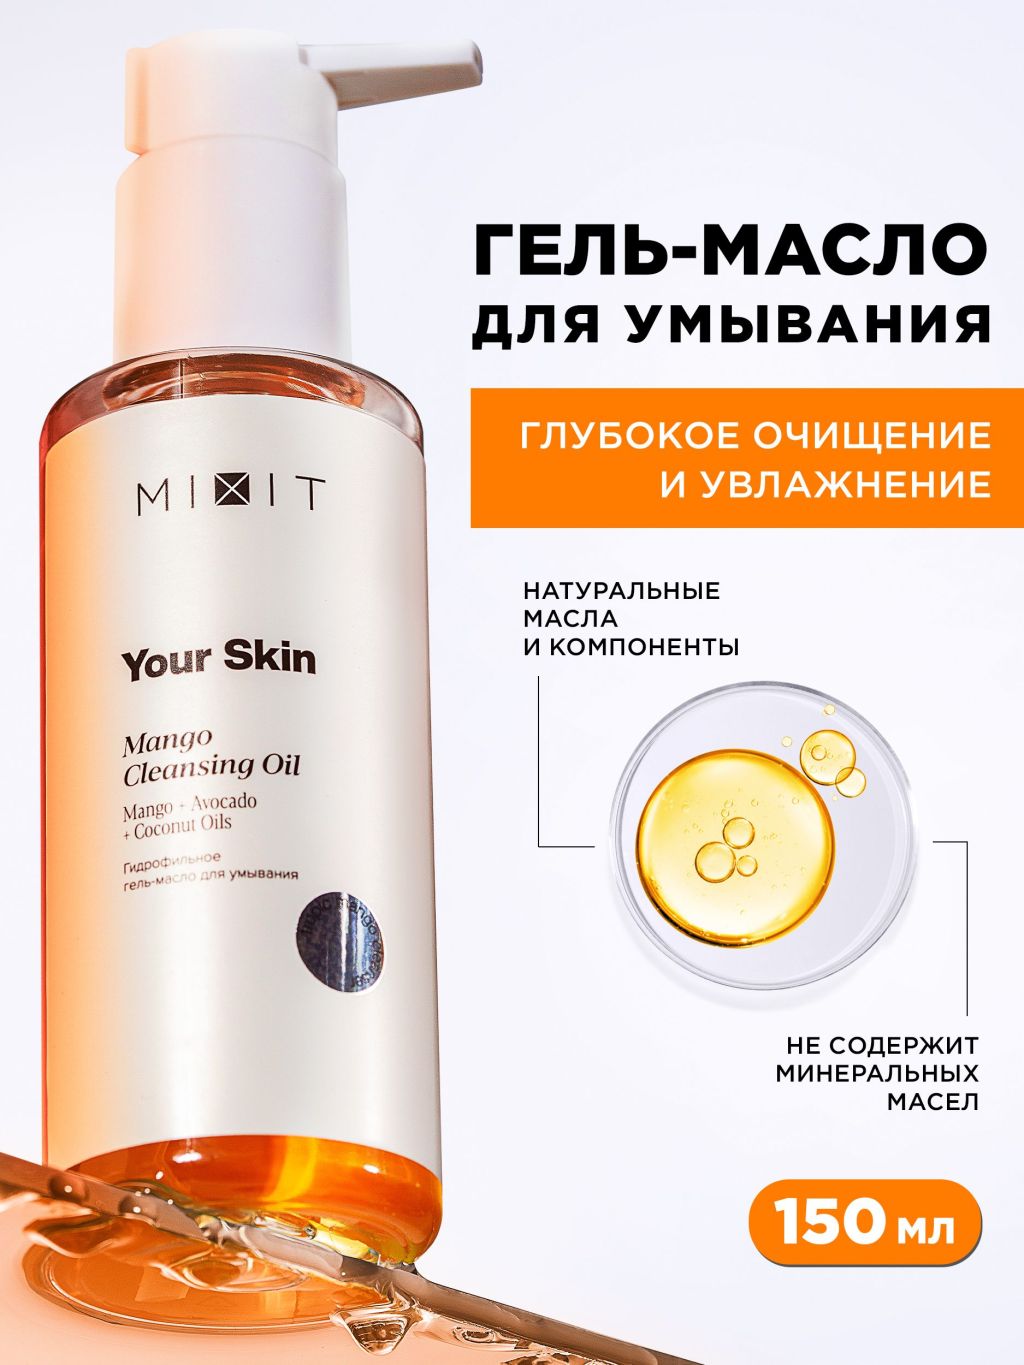 Гидрофильное гель-масло для умывания MIXIT Young Skin Mango Cleansing Oil 150 мл